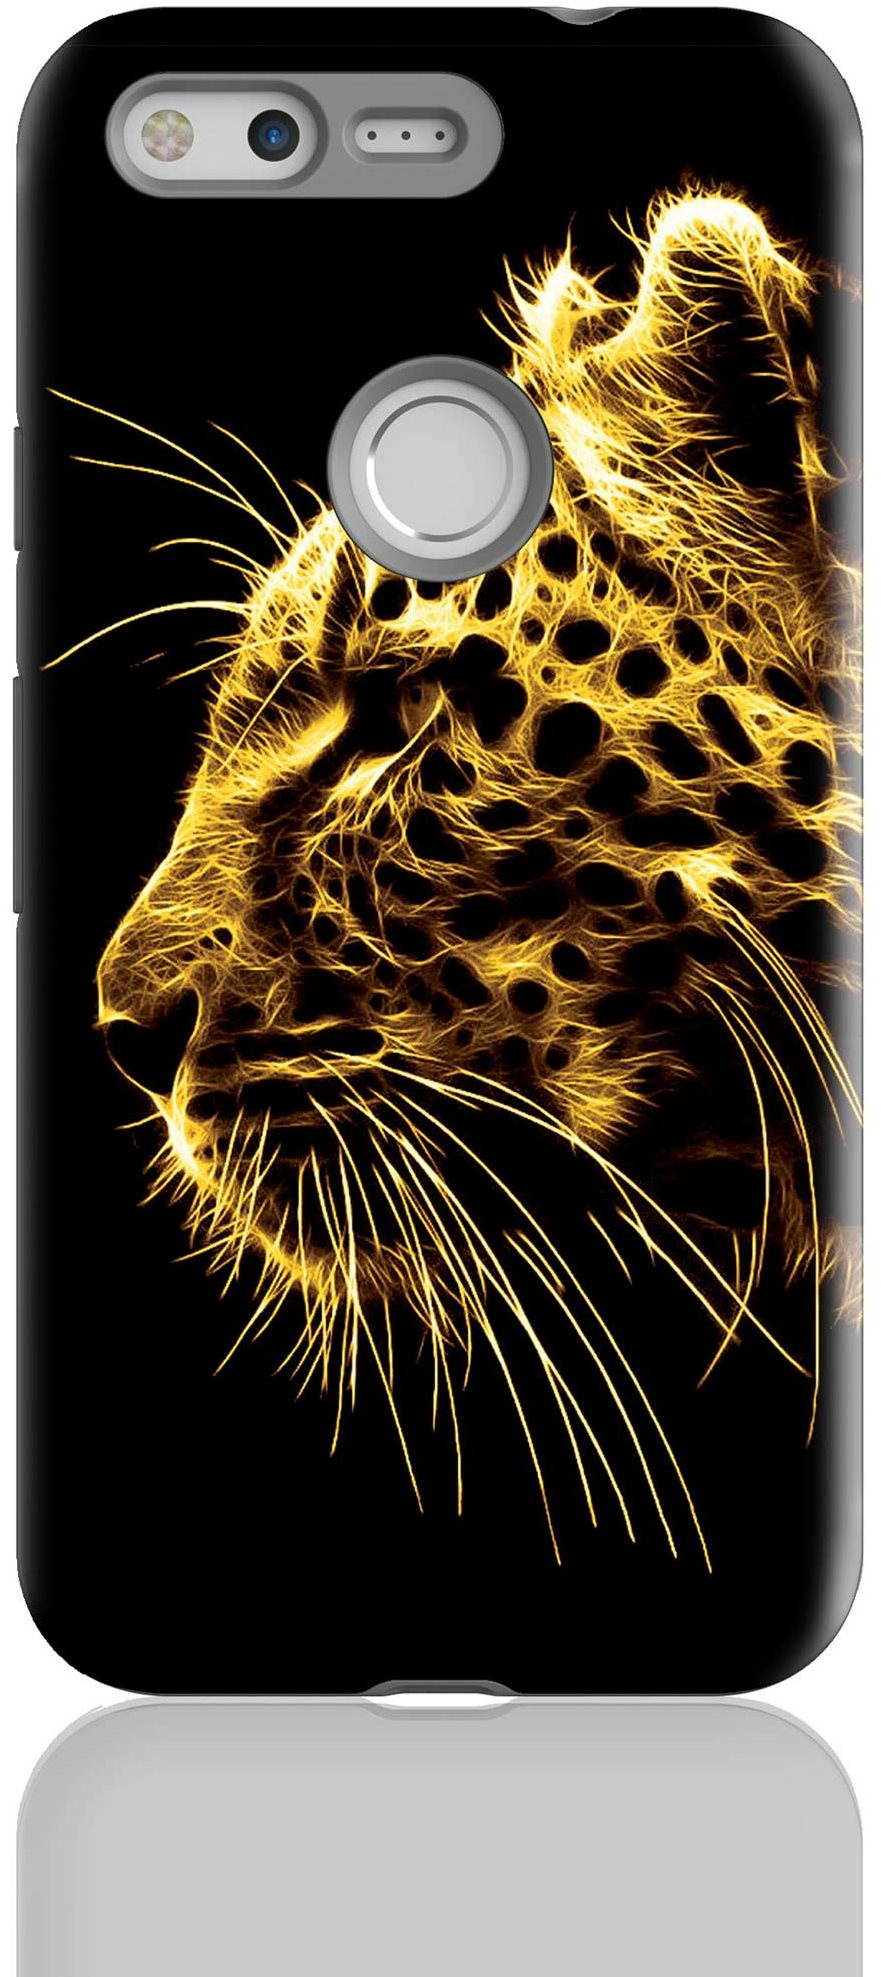 MojePouzdro "Jaguar" + védőszemüveg Google Pixel